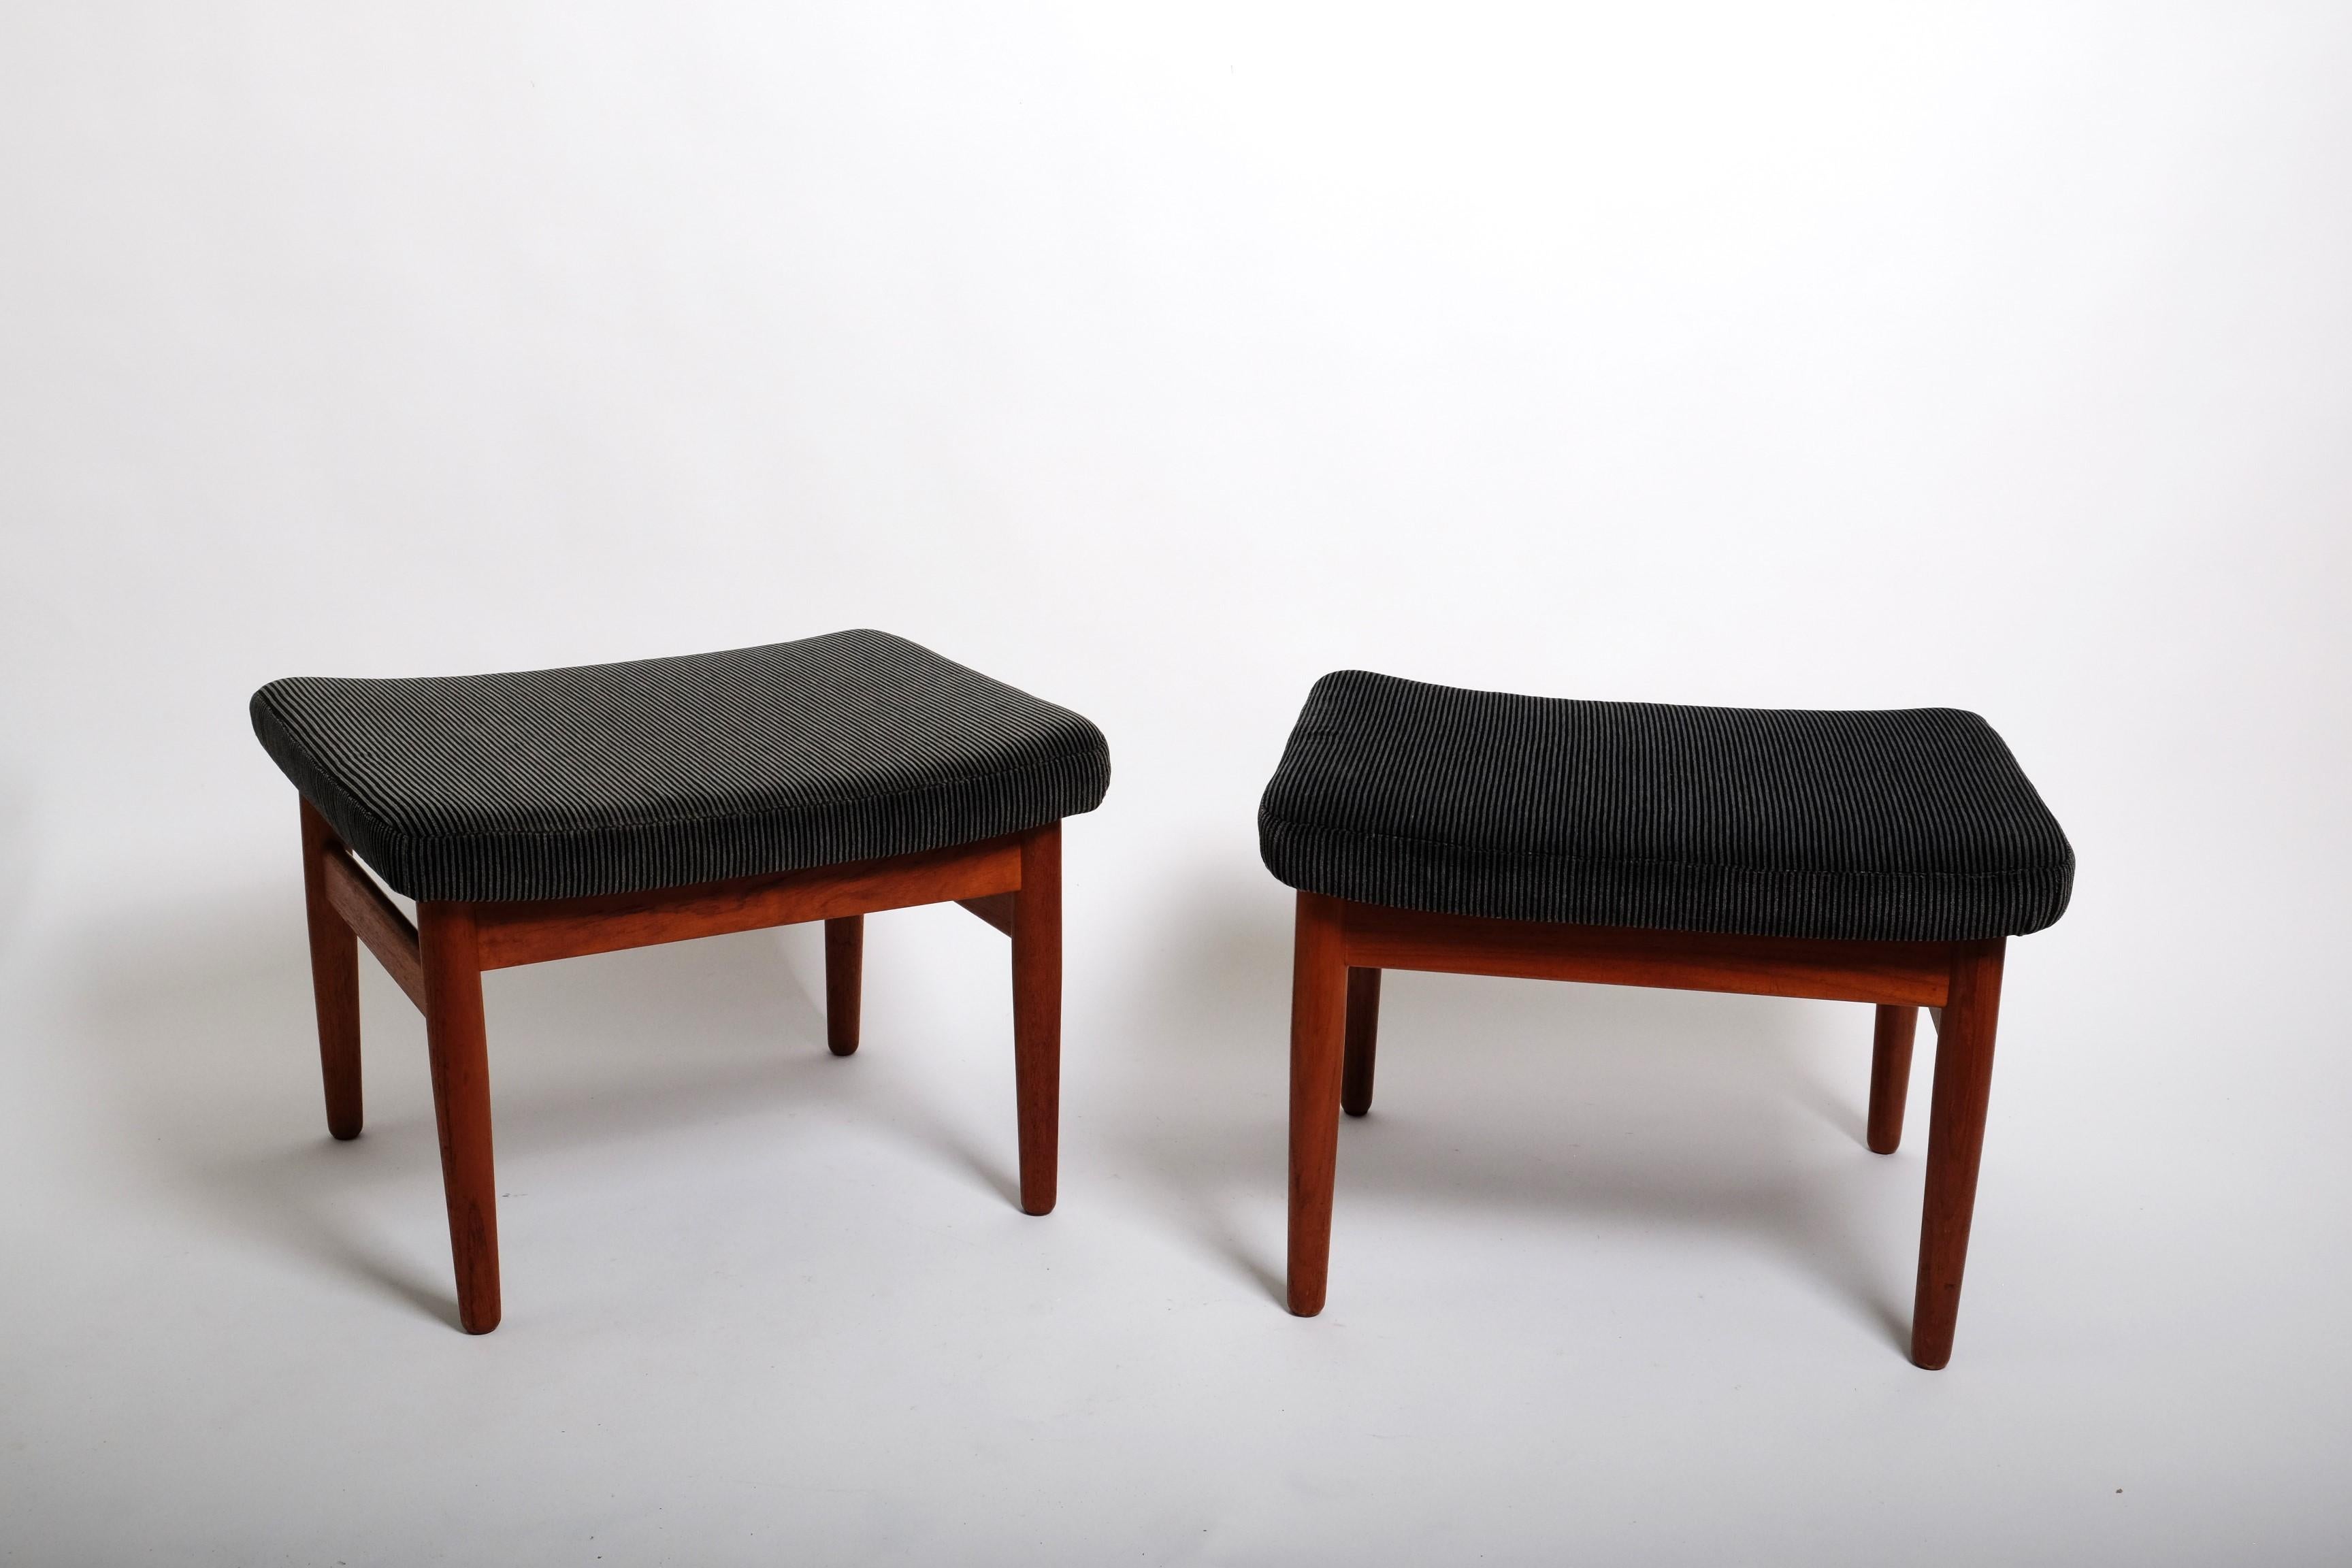 Deux très beaux tabourets dessinés par Arne Vodder pour France & Son, Danemark 1962. Ils ont été conçus à l'origine comme poufs du fauteuil réglable FD164. Mais ils peuvent également être utilisés comme tabourets autonomes. 

Ces tabourets sont